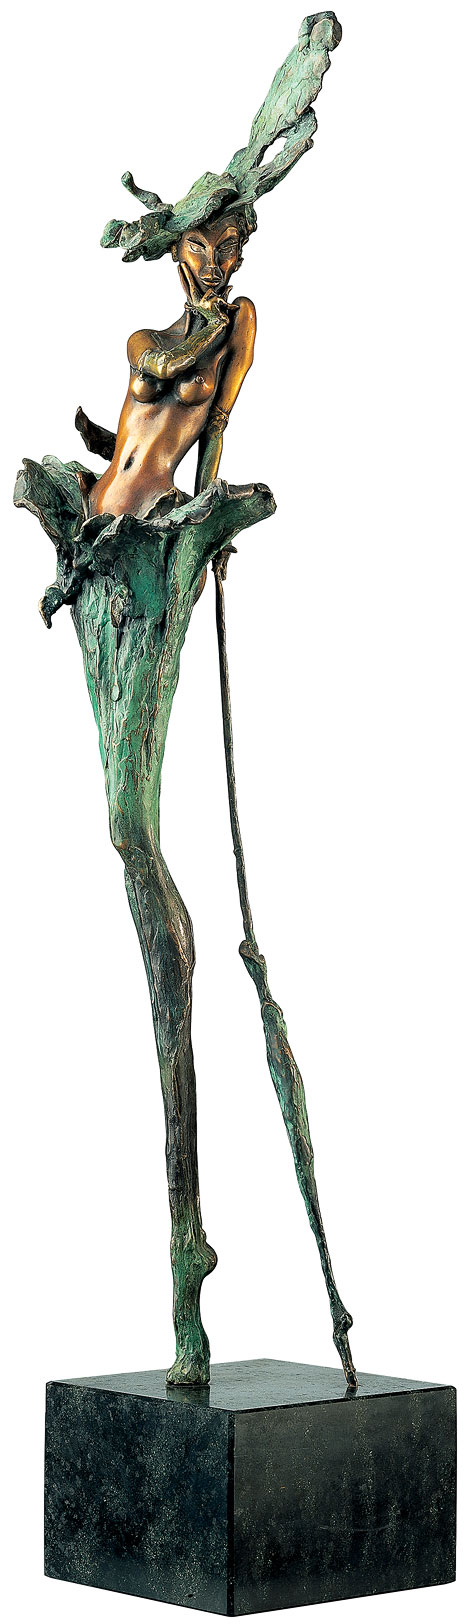 Marc van Megen: Skulptur 'When the lady smiles' (1995), Bronze